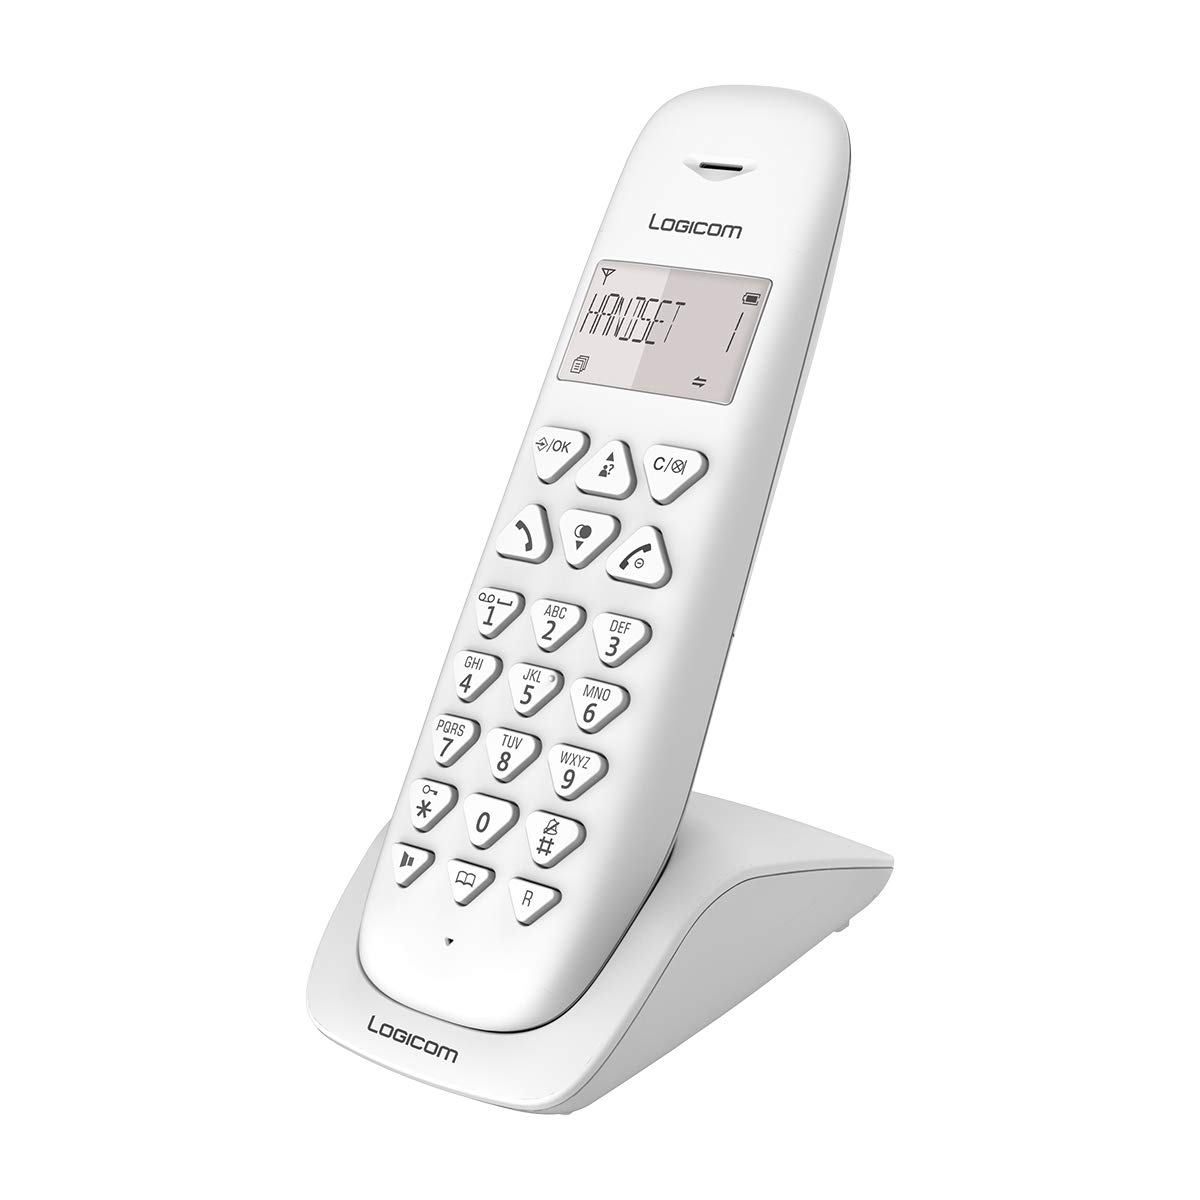 Wireless Phone Fest - Festnetz WLAN ohne Voicemail - Solo - Analoge Telefone und DECT - Logicom Vega 150 Festnetz Wireless-Weiß